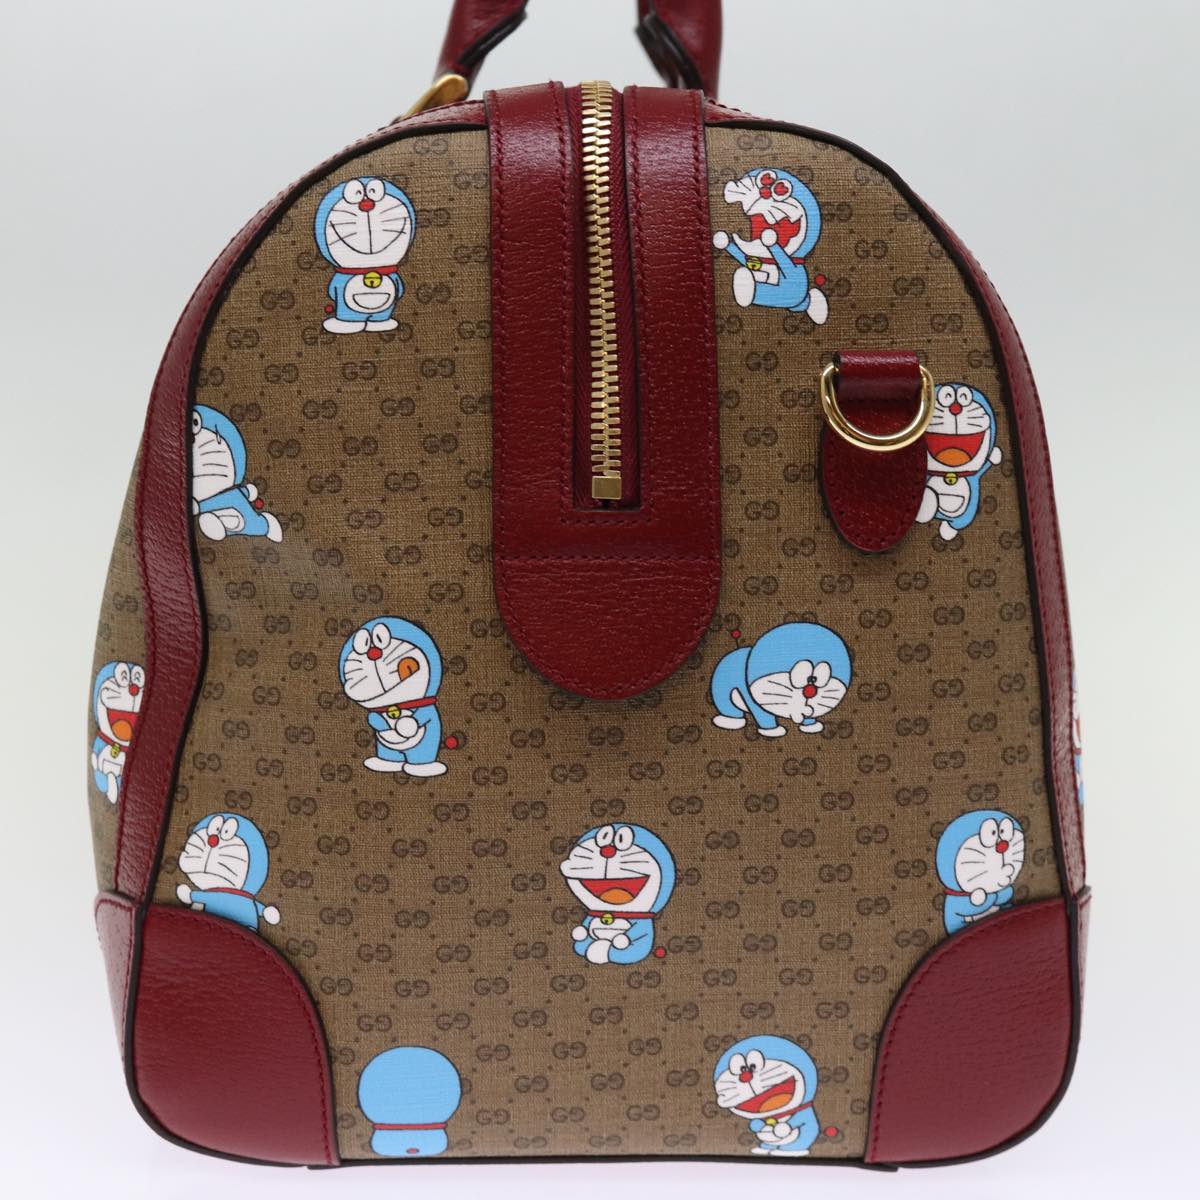 GUCCI Micro GG Supreme Doraemon Boston Bag PVC 2way Beige 647815 Auth 73749S